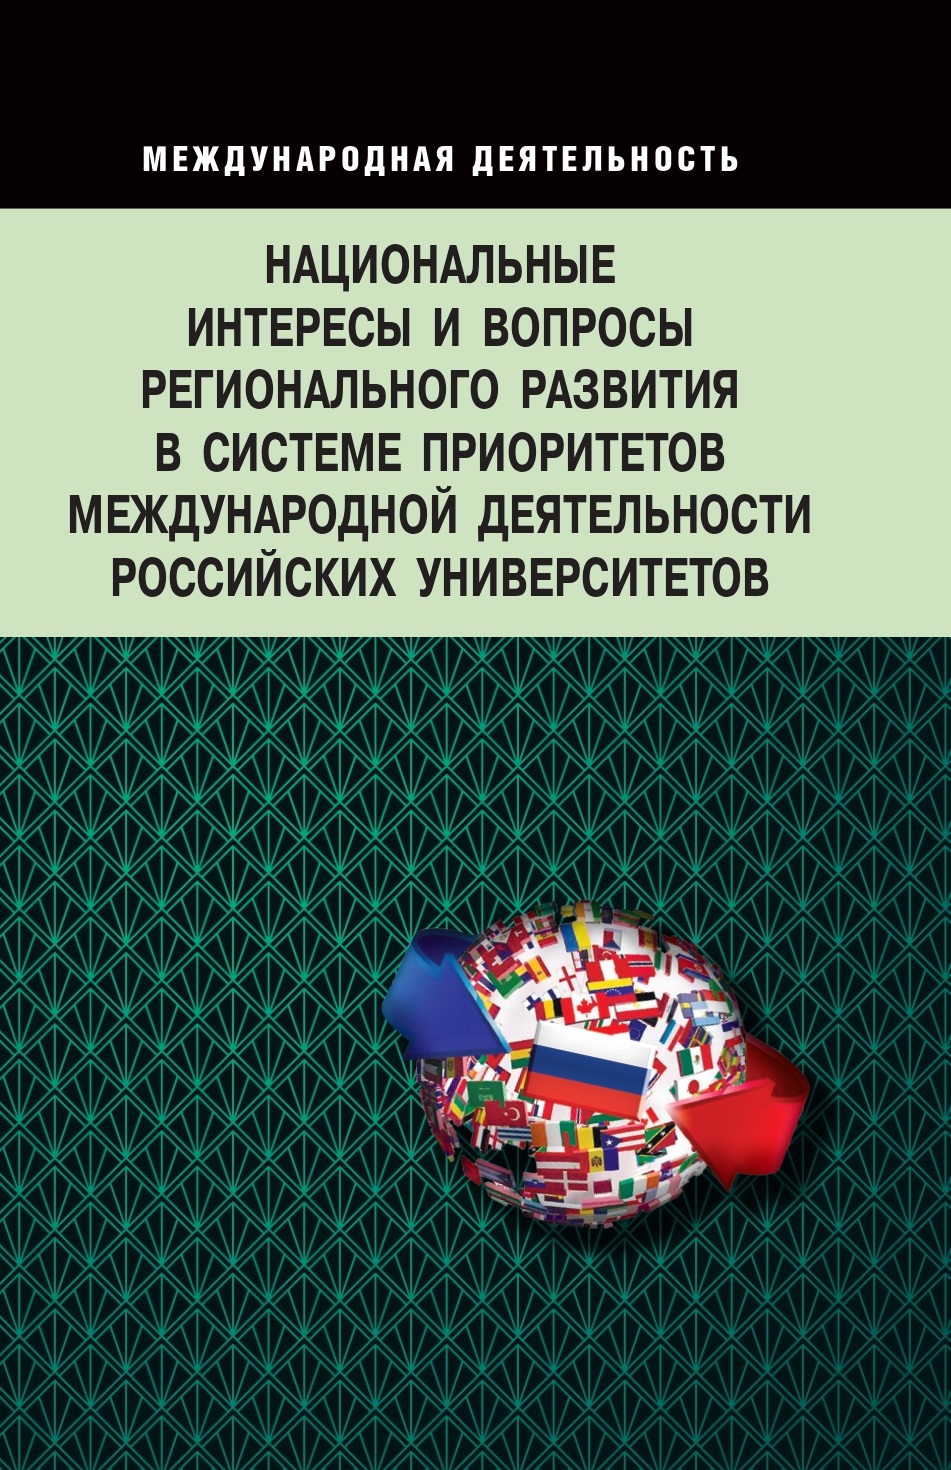             Национальные интересы и вопросы регионального развития в системе приоритетов международной деятельности российских университетов
    